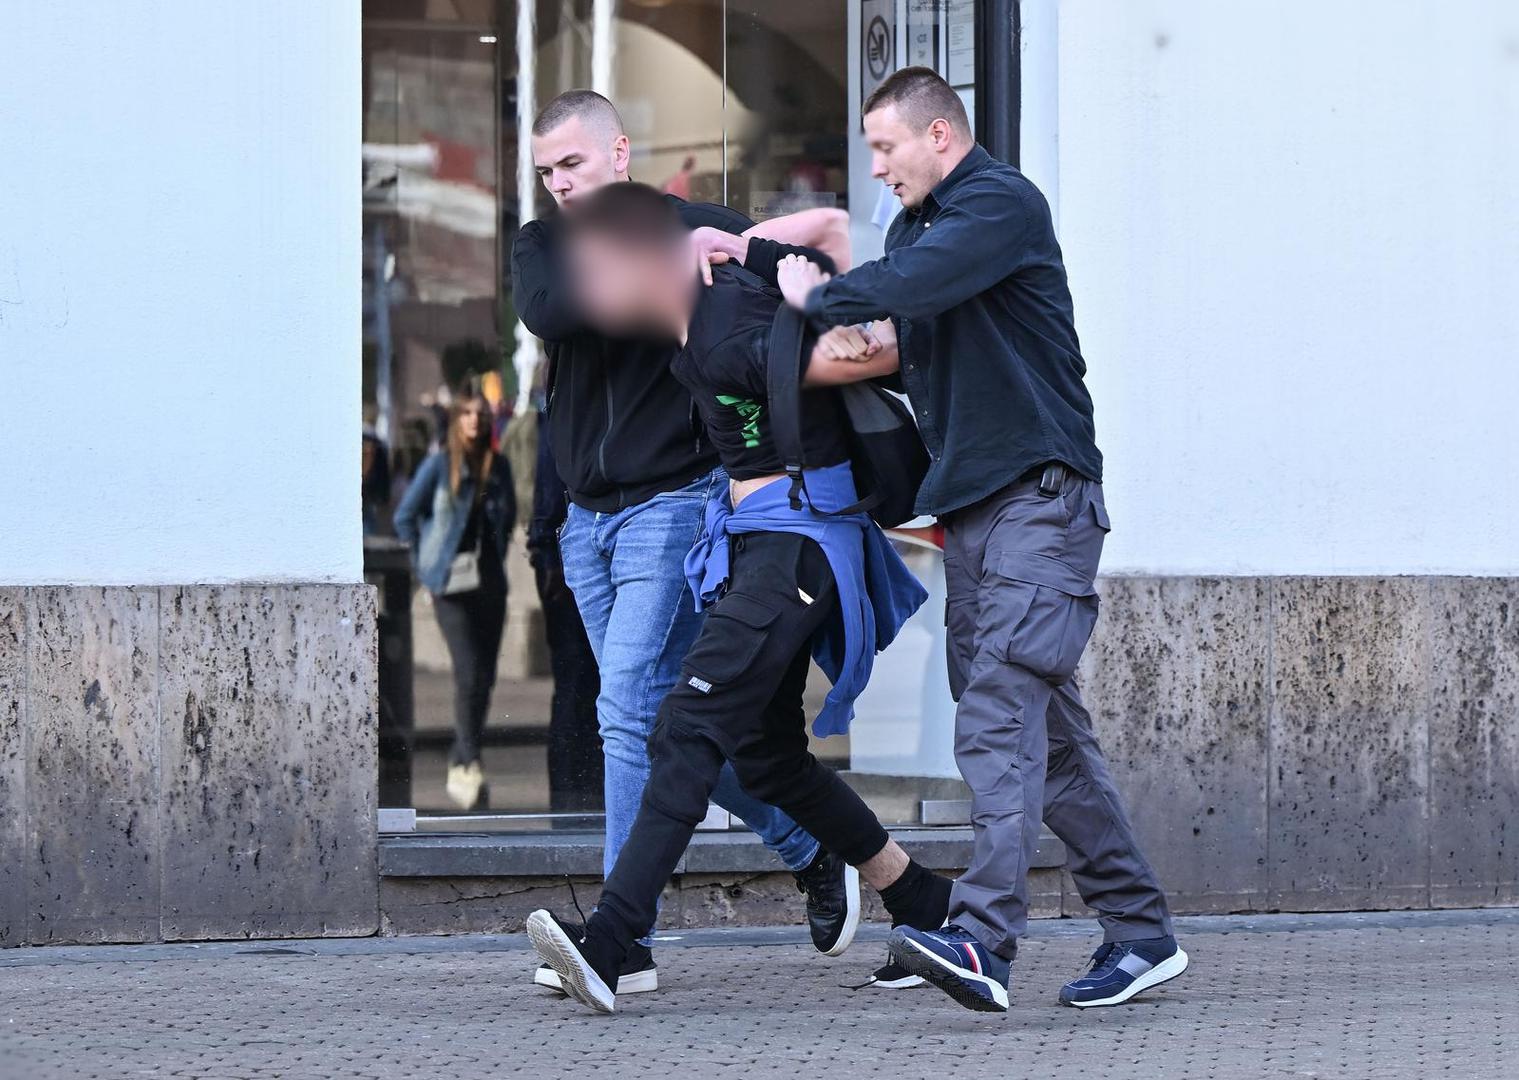 Za vrijeme današnjeg skupa molitelja u Zagrebu došlo je do incidenta u kojemu je uhićen jedan mladić.